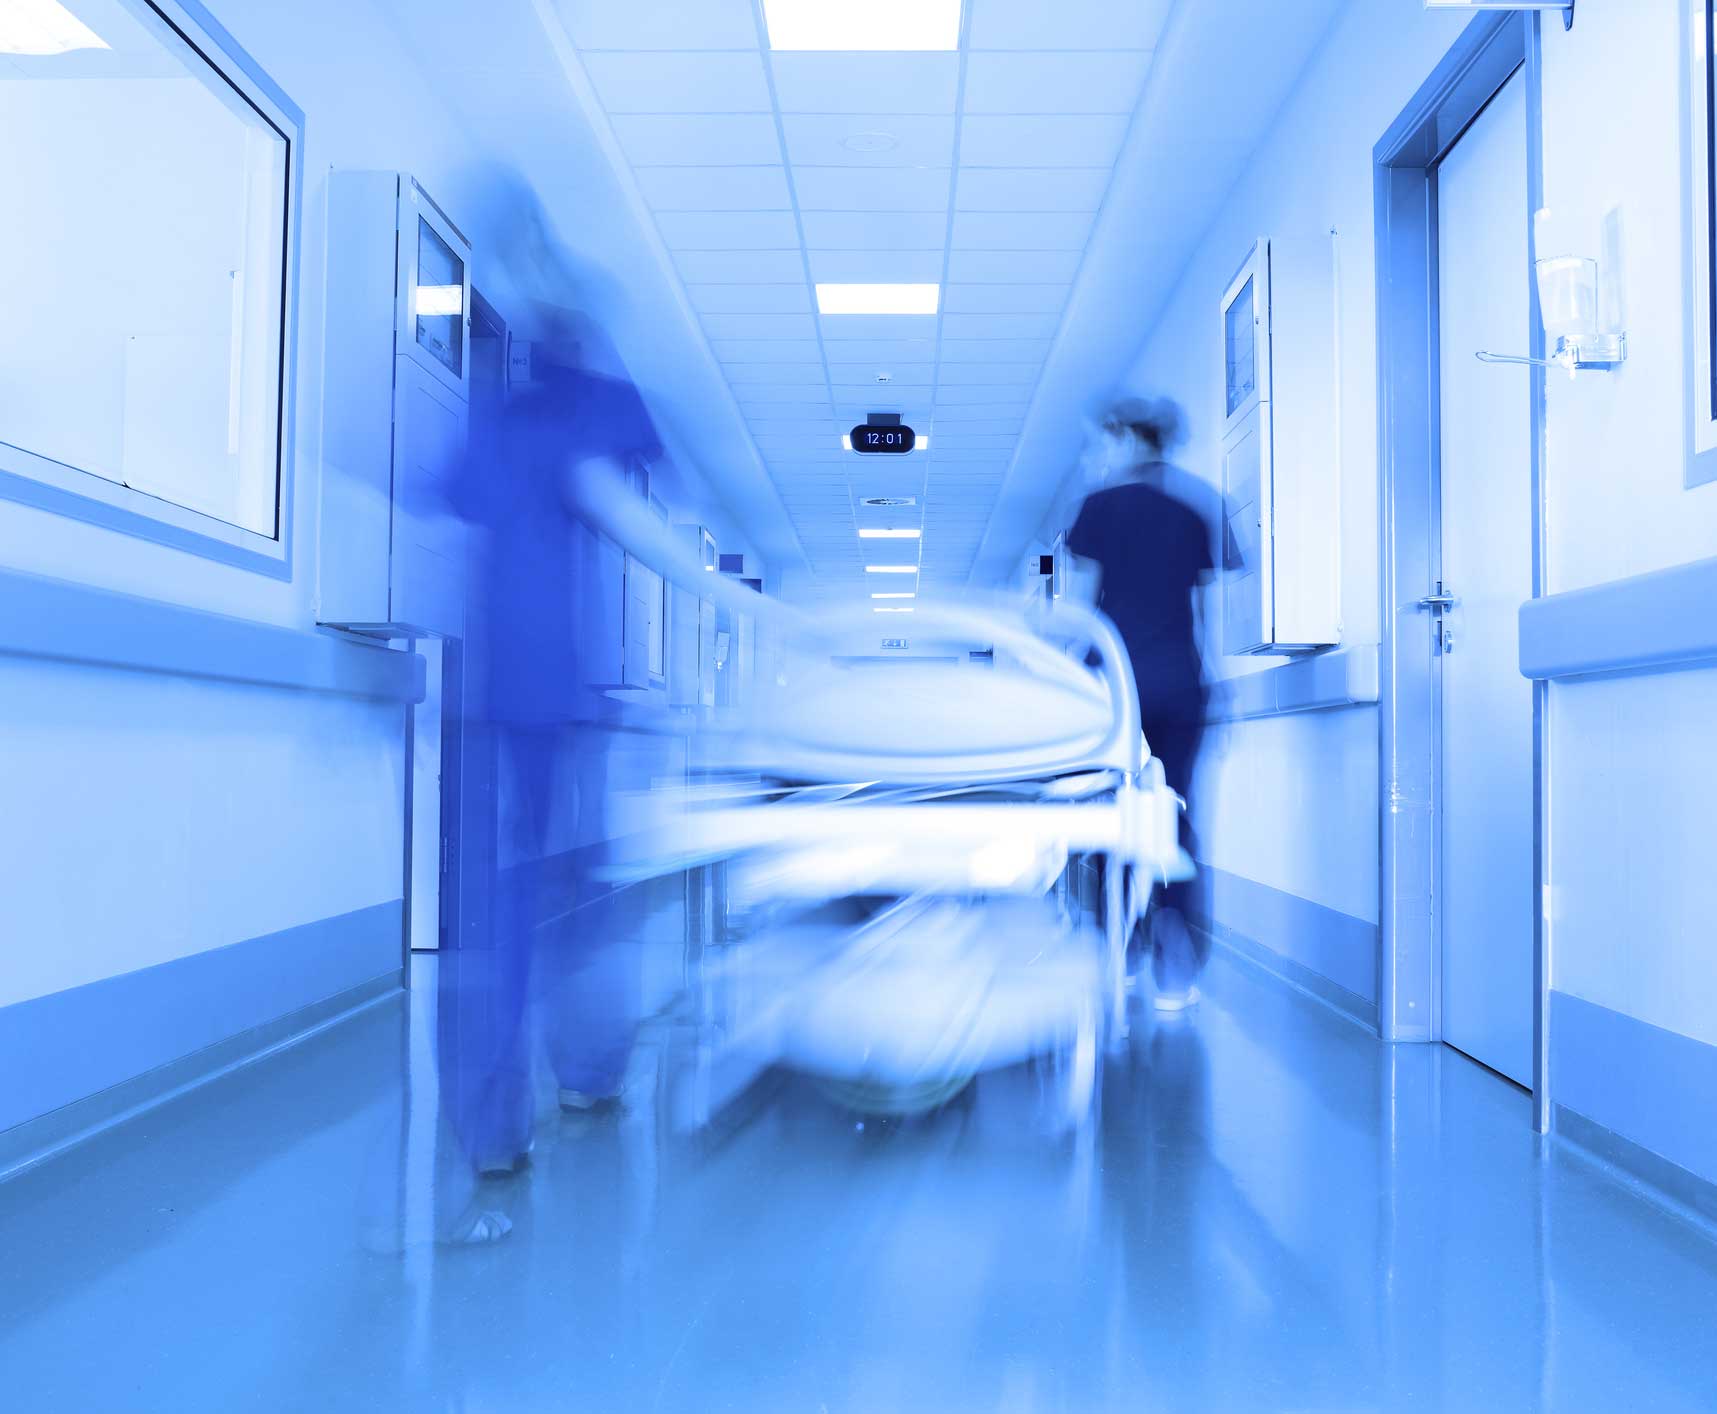 Blurry shot of gurney in a hospital hallway